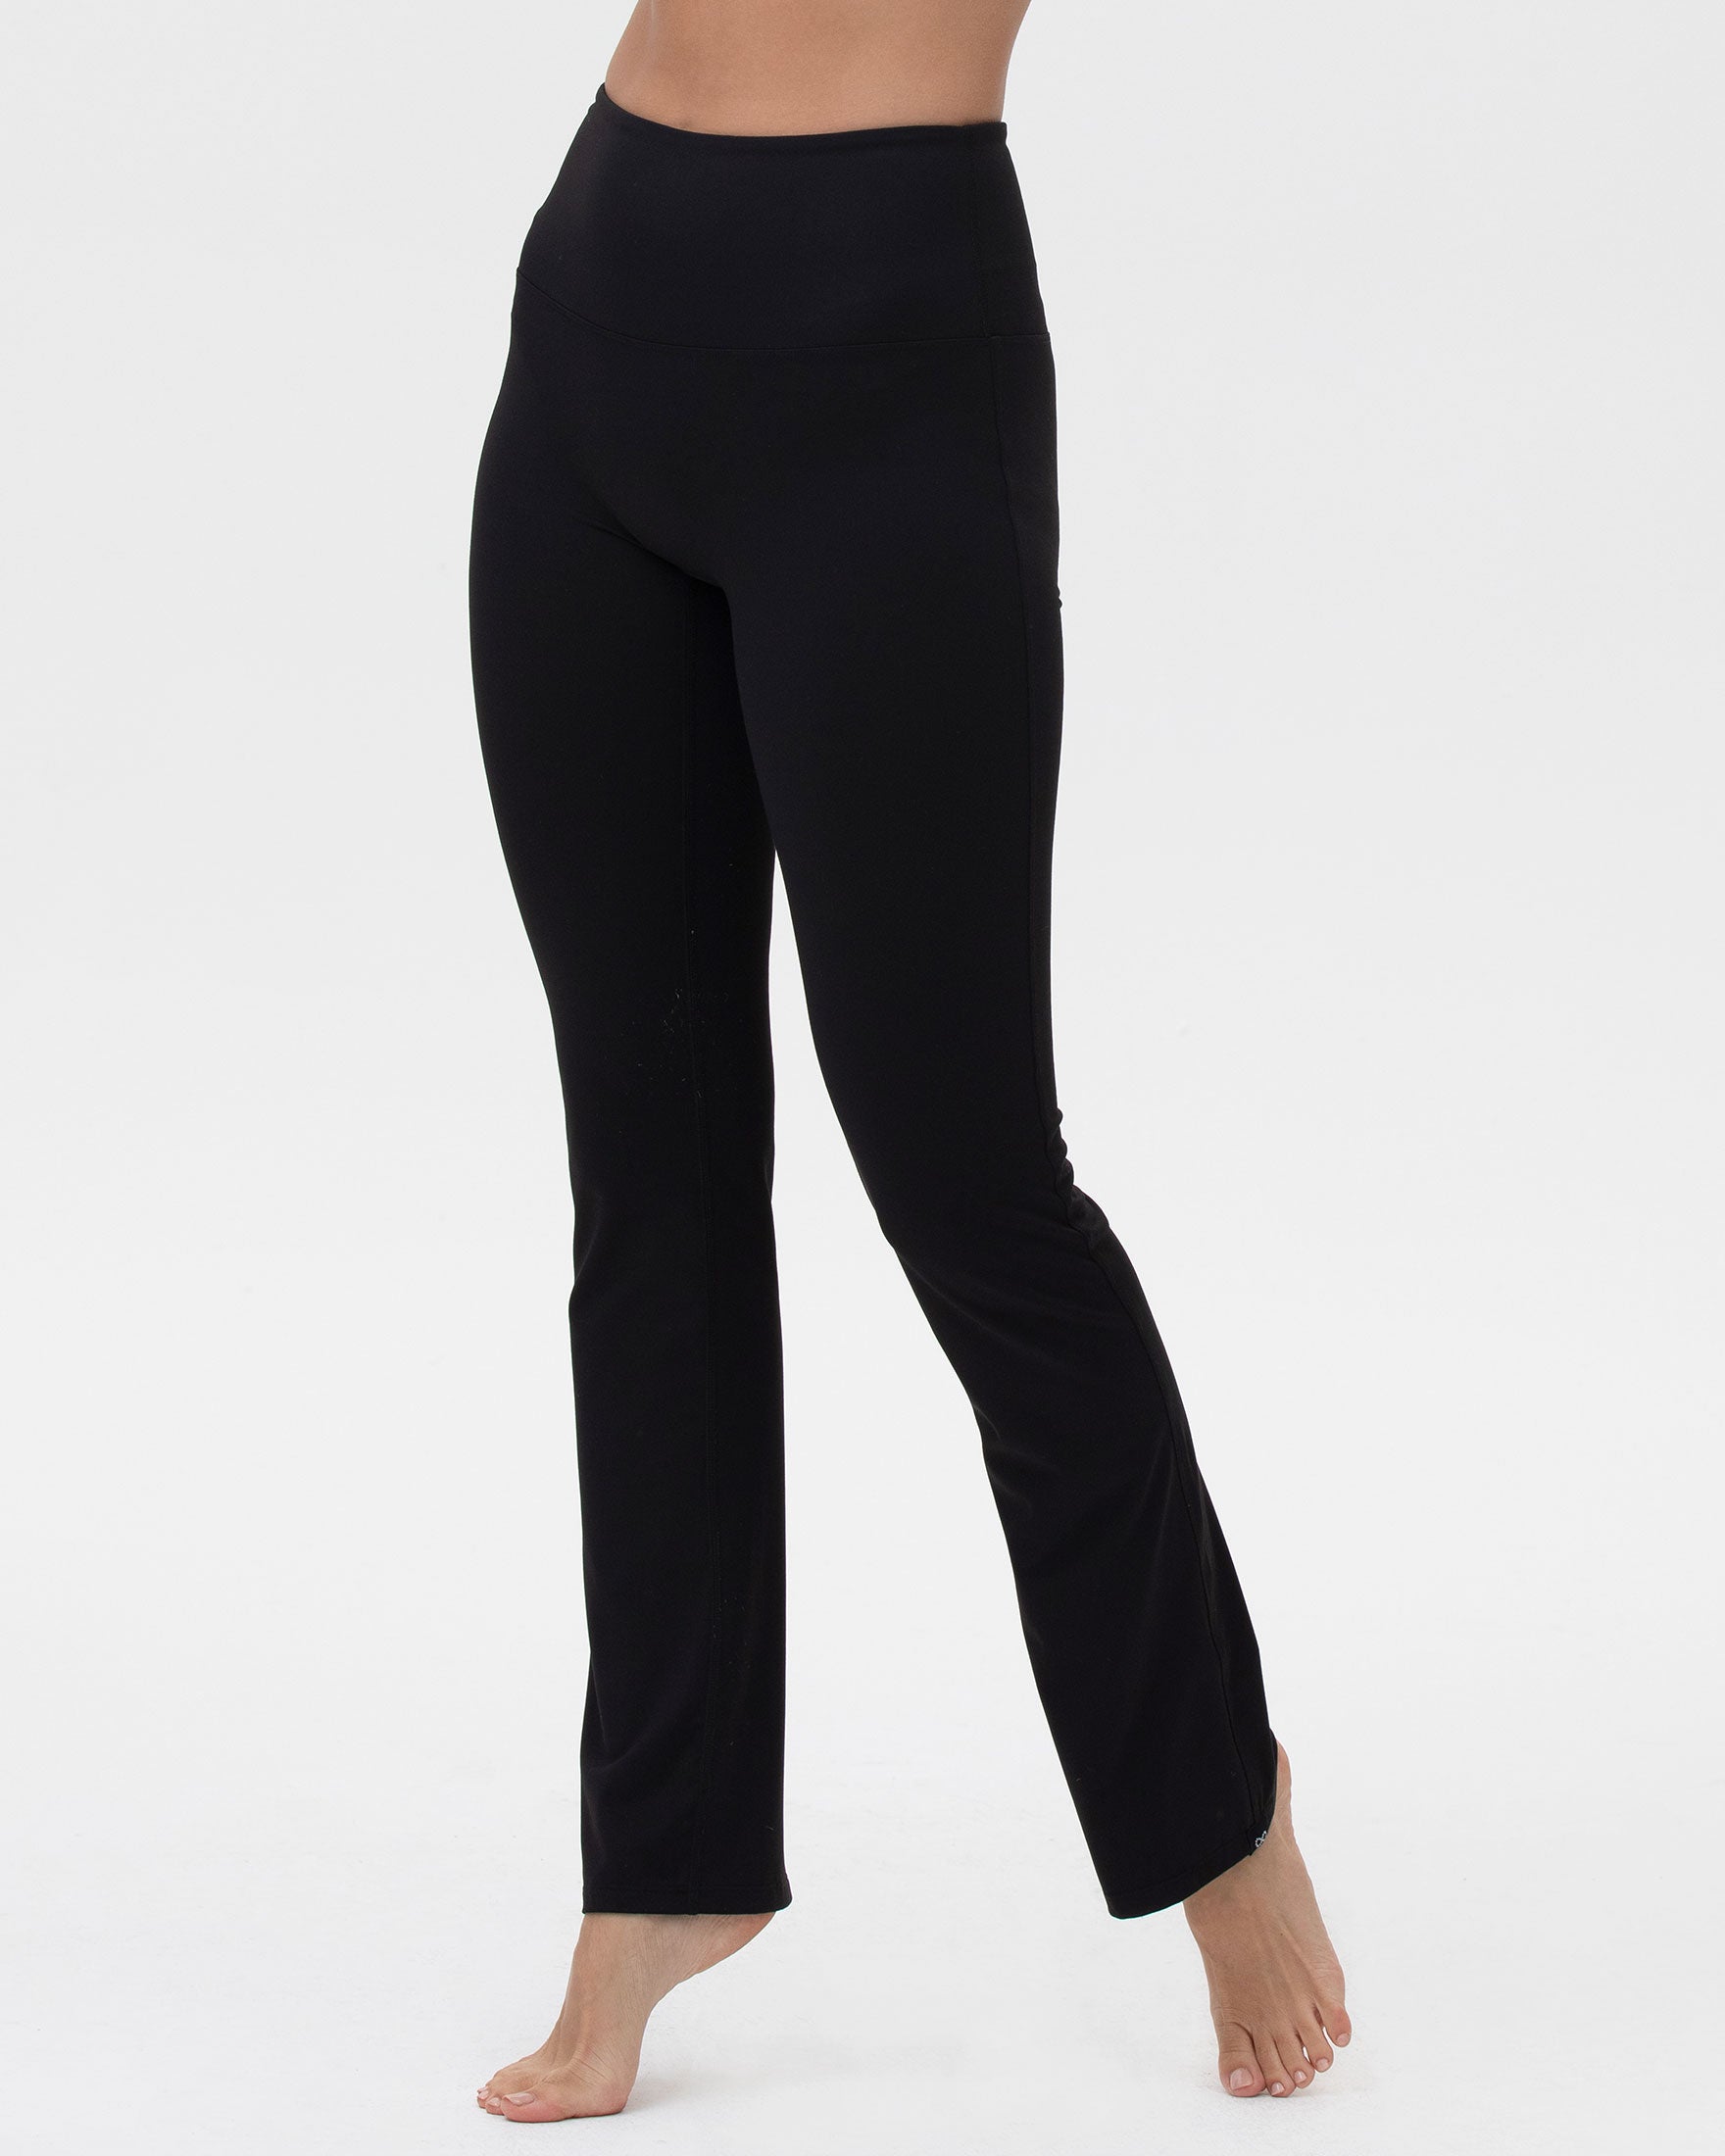 Womens Bootcut Yoga Pants Flare Pants Cross Waist Yoga Pants Tall Sport Yoga  Pants with Pockets Workout Leggings Pants - Walmart.com